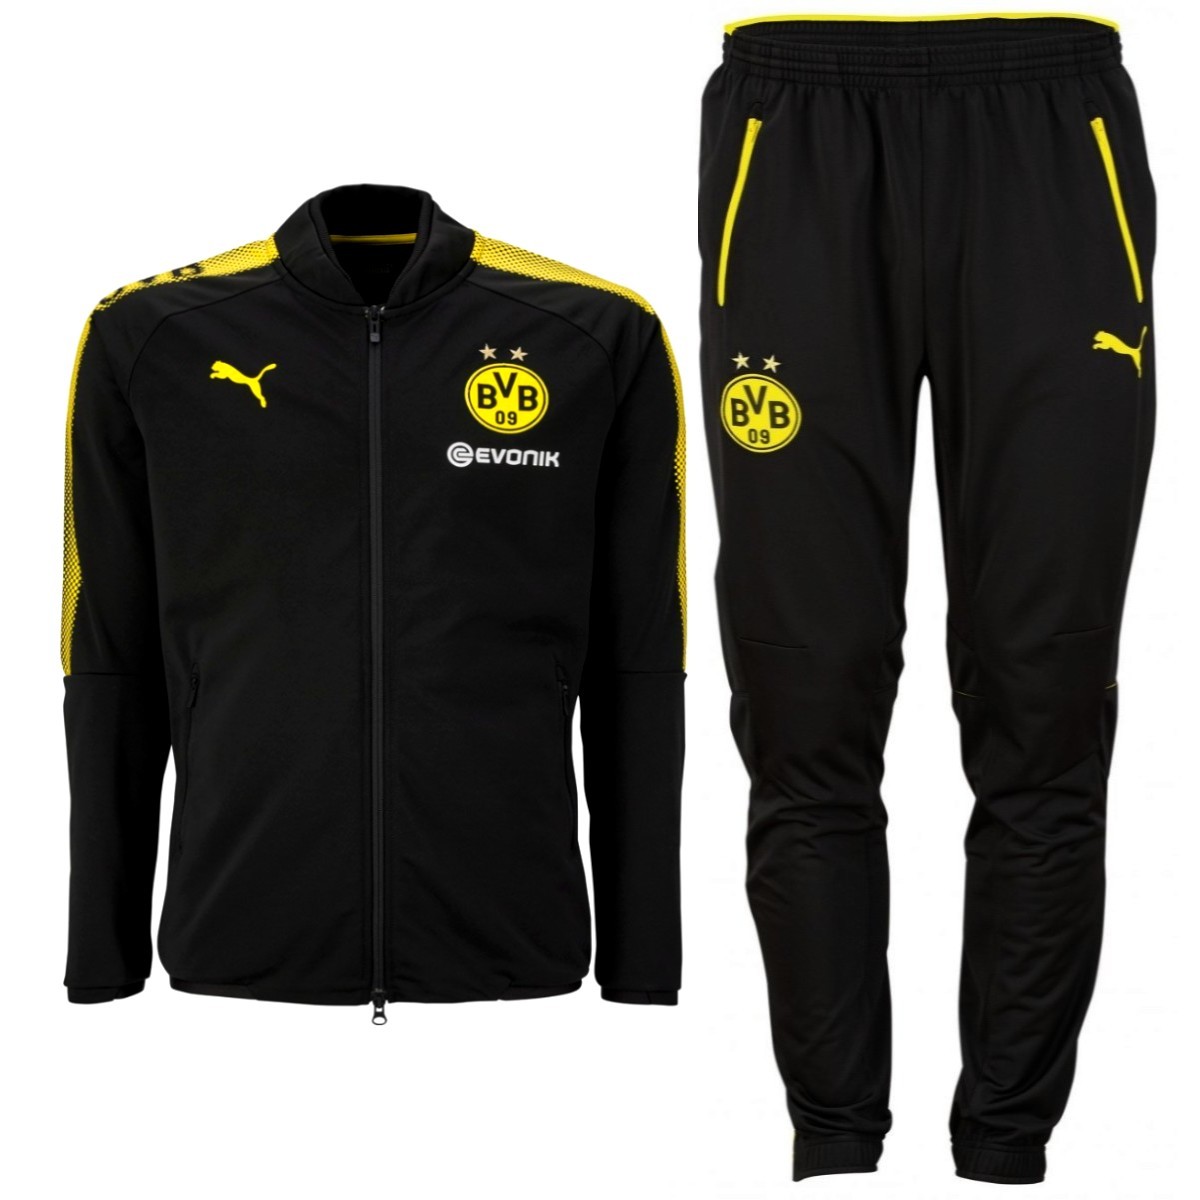 BVB Borussia Dortmund black 